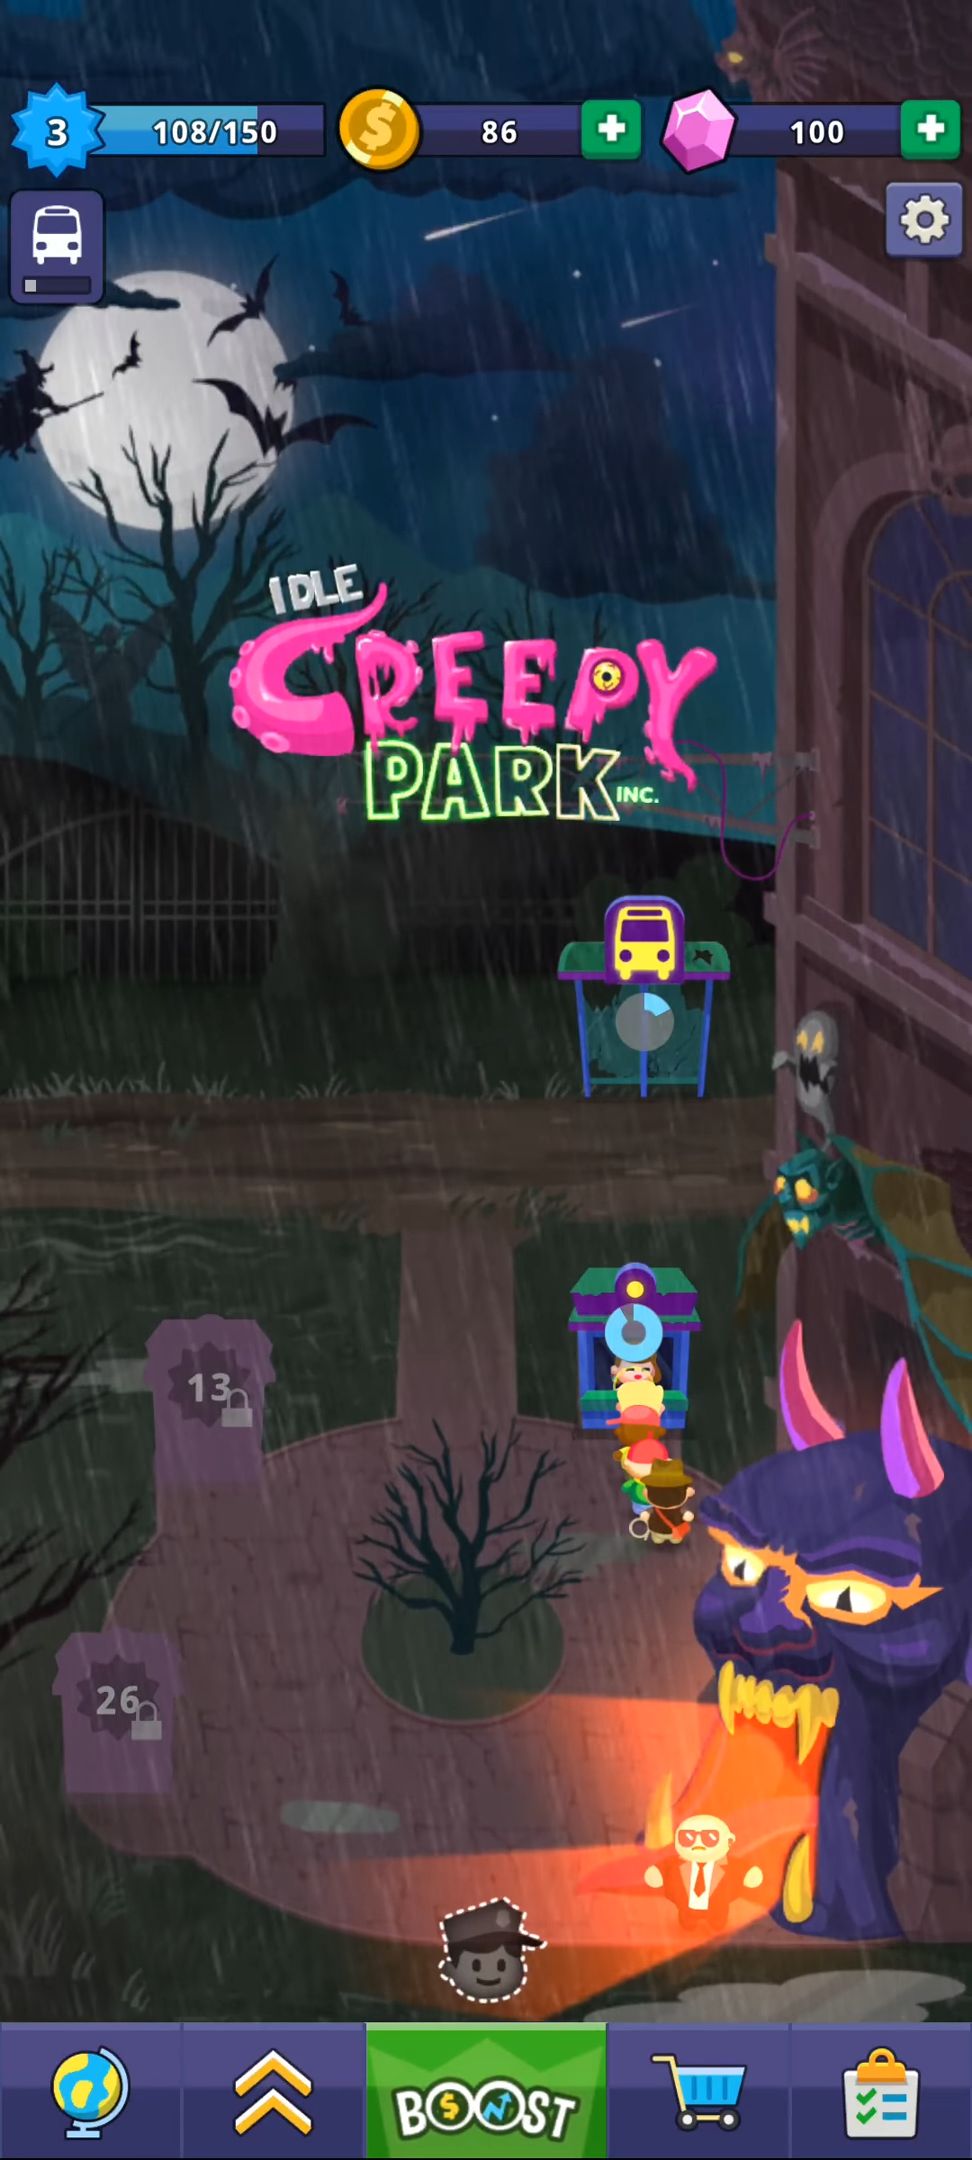 Скачать Idle Creepy Park Inc.: Android Кликеры игра на телефон и планшет.